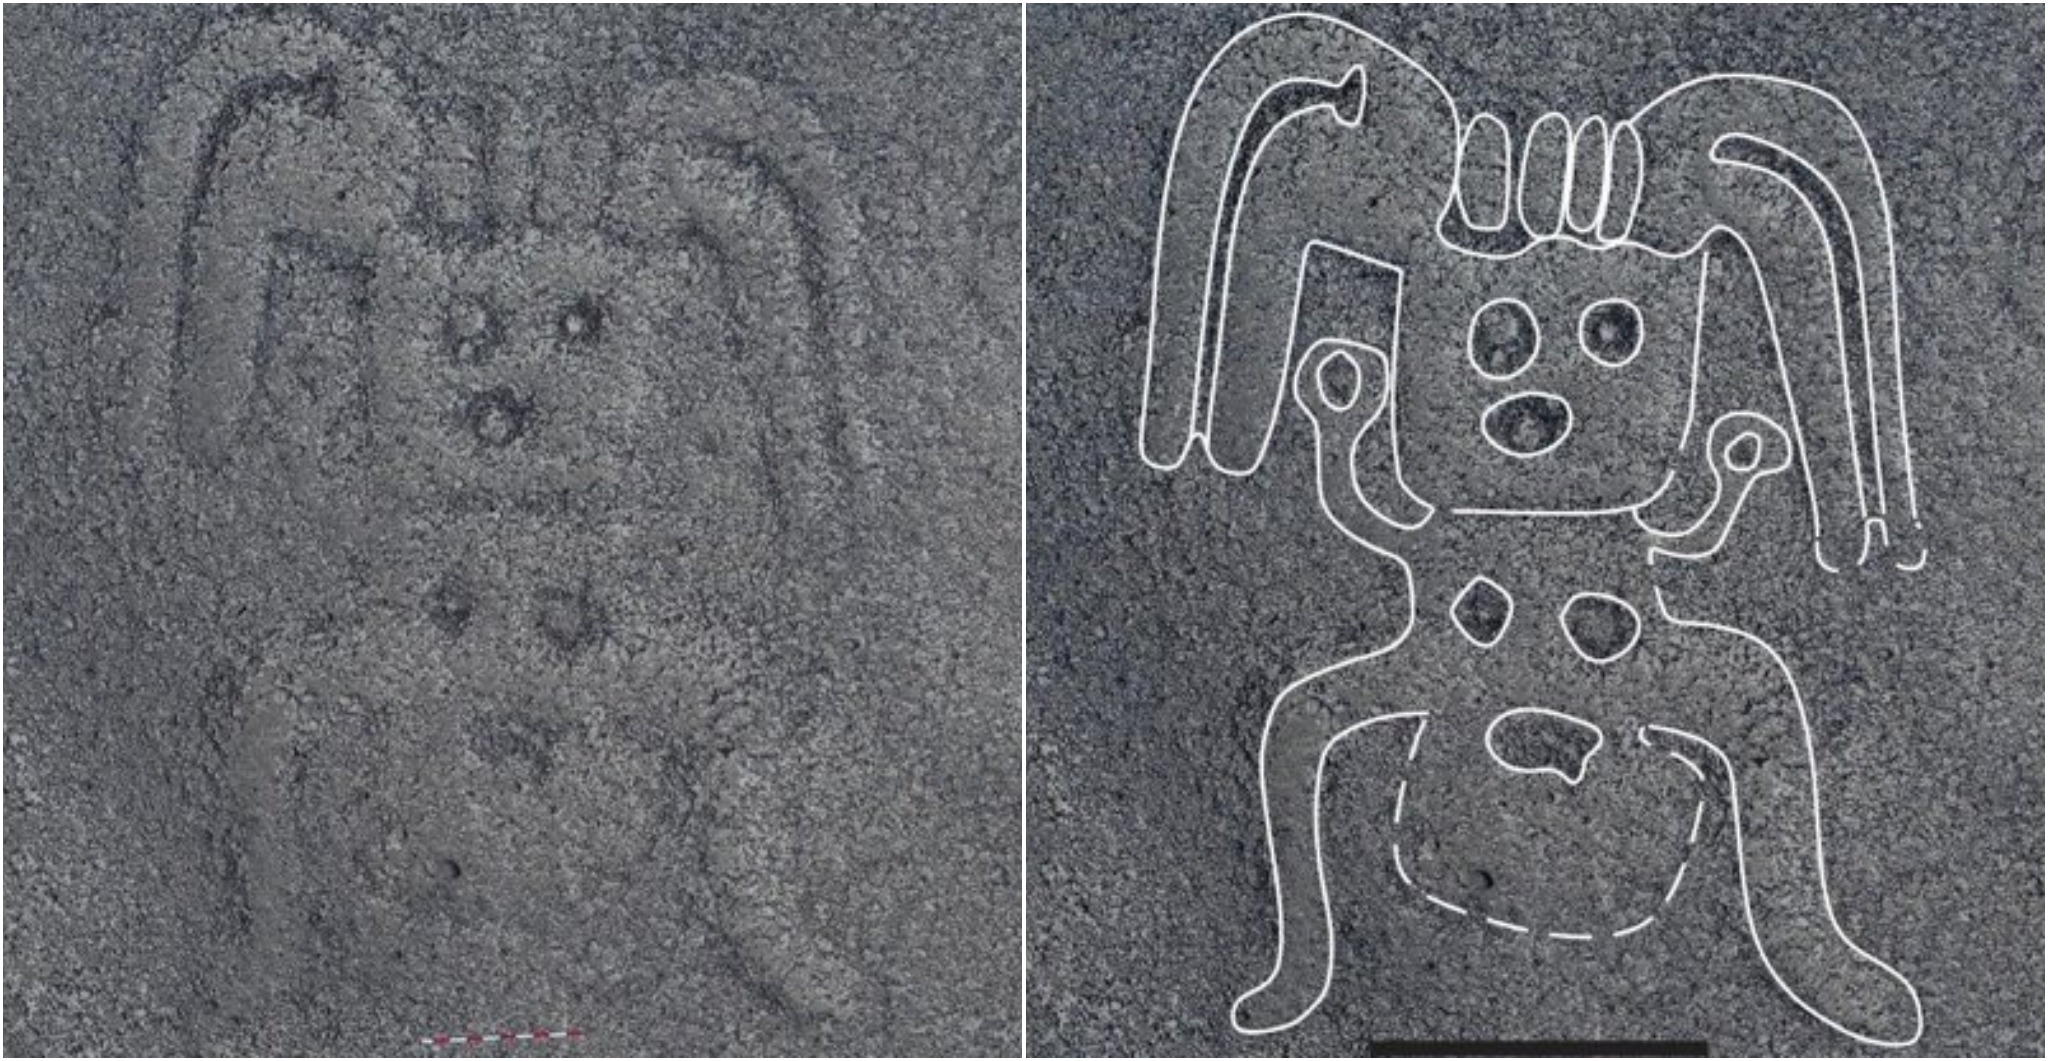 New Humanoid geoglyph found, approx 10 meters long (Yamagata University)